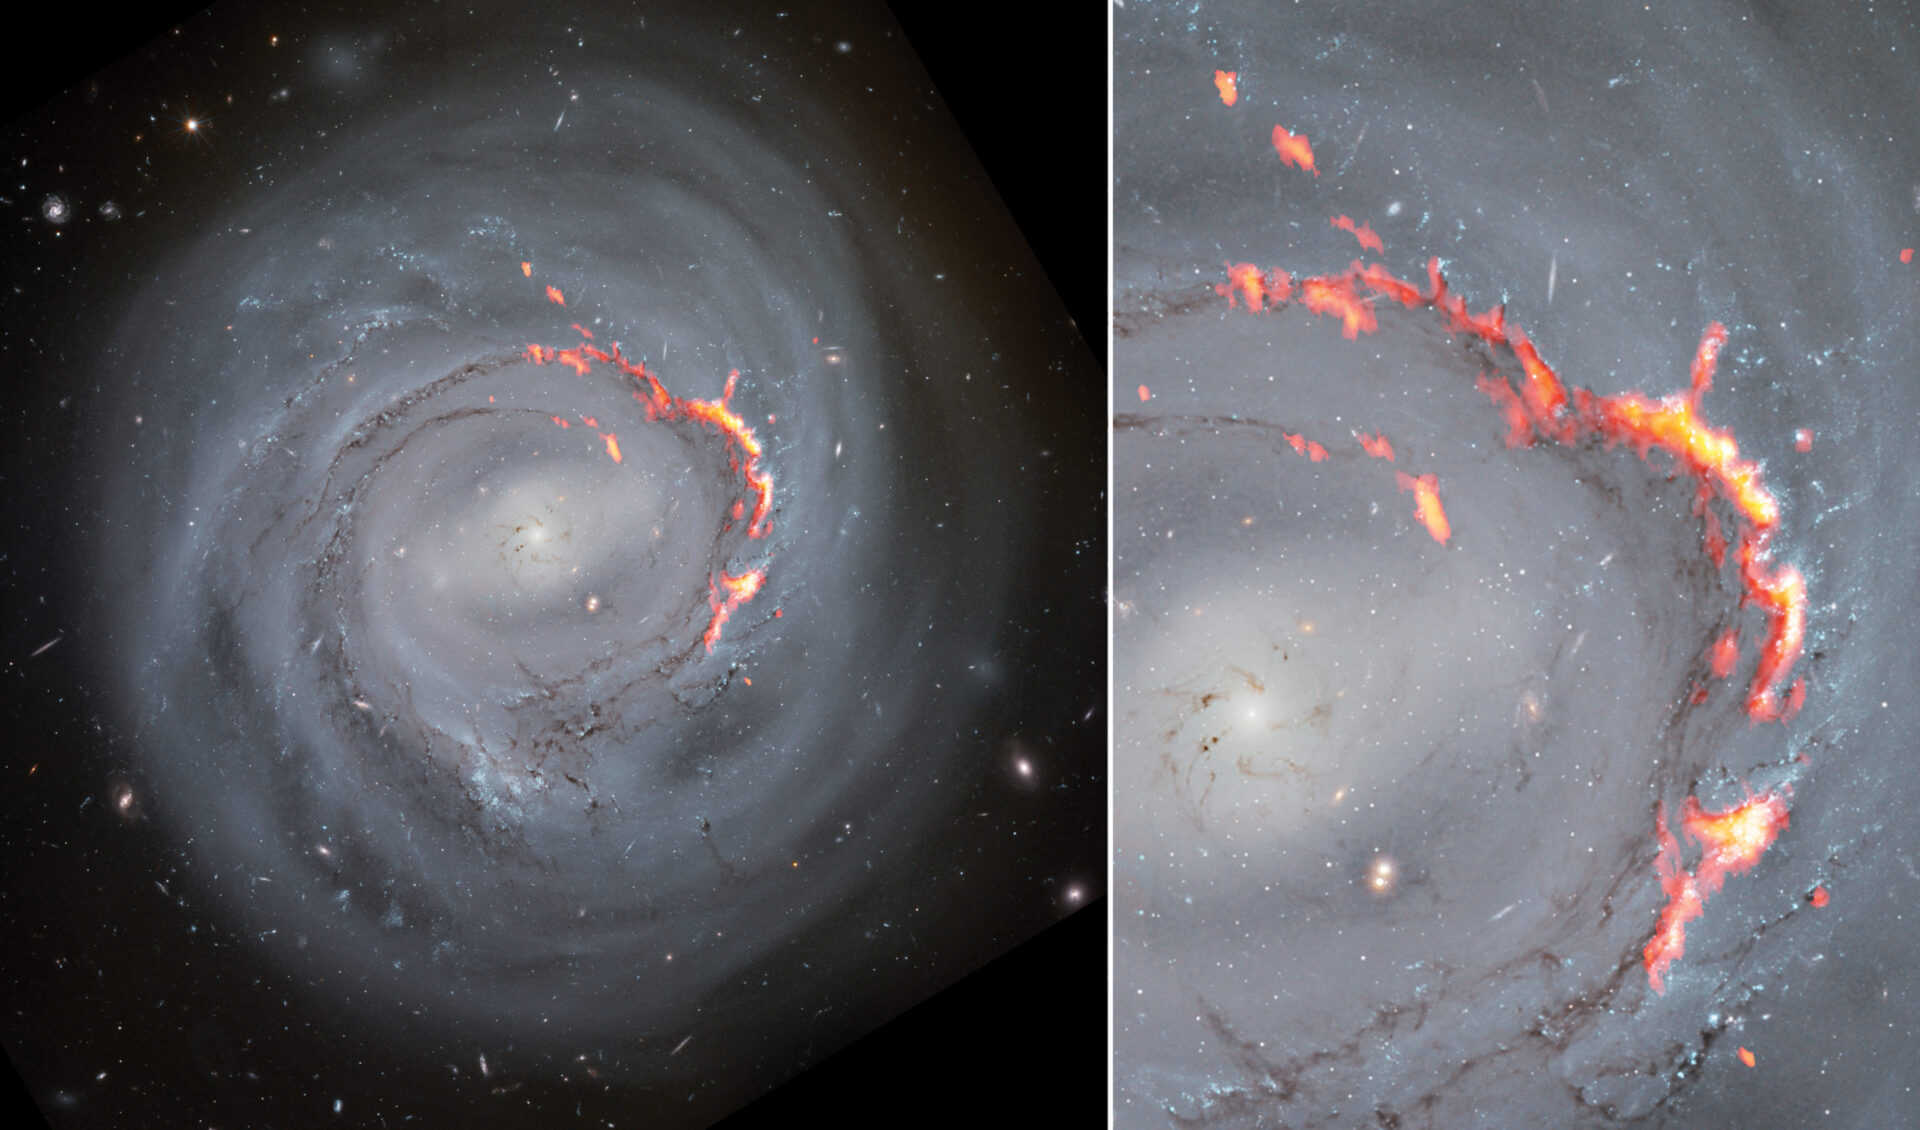 <p>Esta combinación de imágenes muestra los datos de ALMA (rojo y naranja) superpuestos a imágenes ópticas de NGC 4921 obtenidas con el telescopio espacial Hubble. Un nuevo estudio de esta galaxia espiral barrada reveló la presencia de estructuras filamentosas similares a los Pilares de la Creación, pero mucho más grandes. Estas estructuras se forman por efecto de un fenómeno conocido como despojo por presión, que desplaza el gas de una galaxia y la despoja del material necesario para formar nuevas estrellas. </p>
<p>Créditos: ALMA (ESO/NAOJ/NRAO)/S. Dagnello (NRAO), NASA/ESA/Hubble, K. Cook (LLNL), L. Shatz</p>
